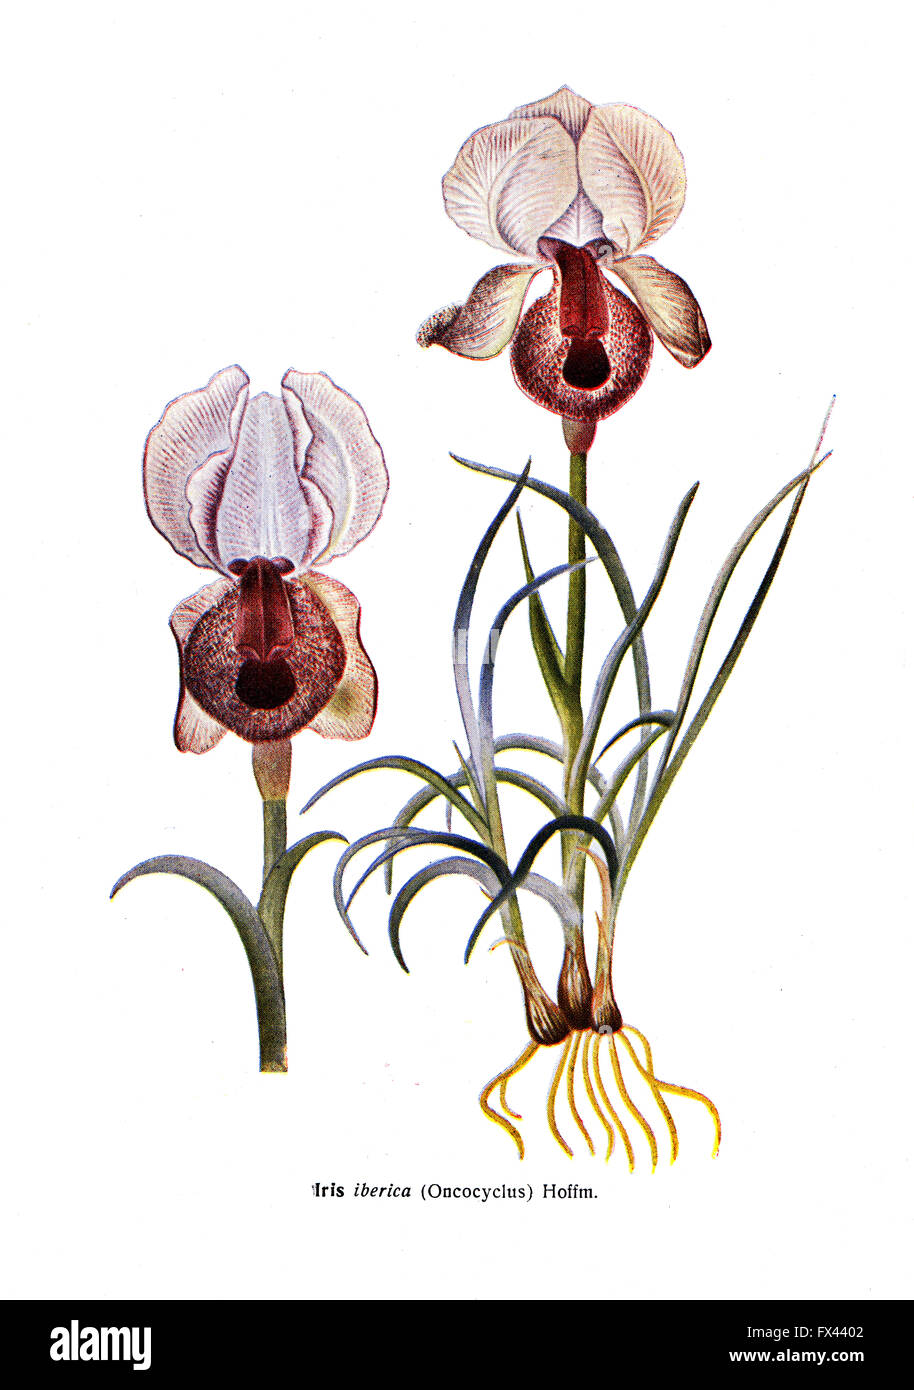 Iberica Iris - Oncocyclus - Hoffm - une illustration de l'album "espèce de Condemned bulbes Fleurs de l'Union soviétique", Moscou, 1935 Banque D'Images